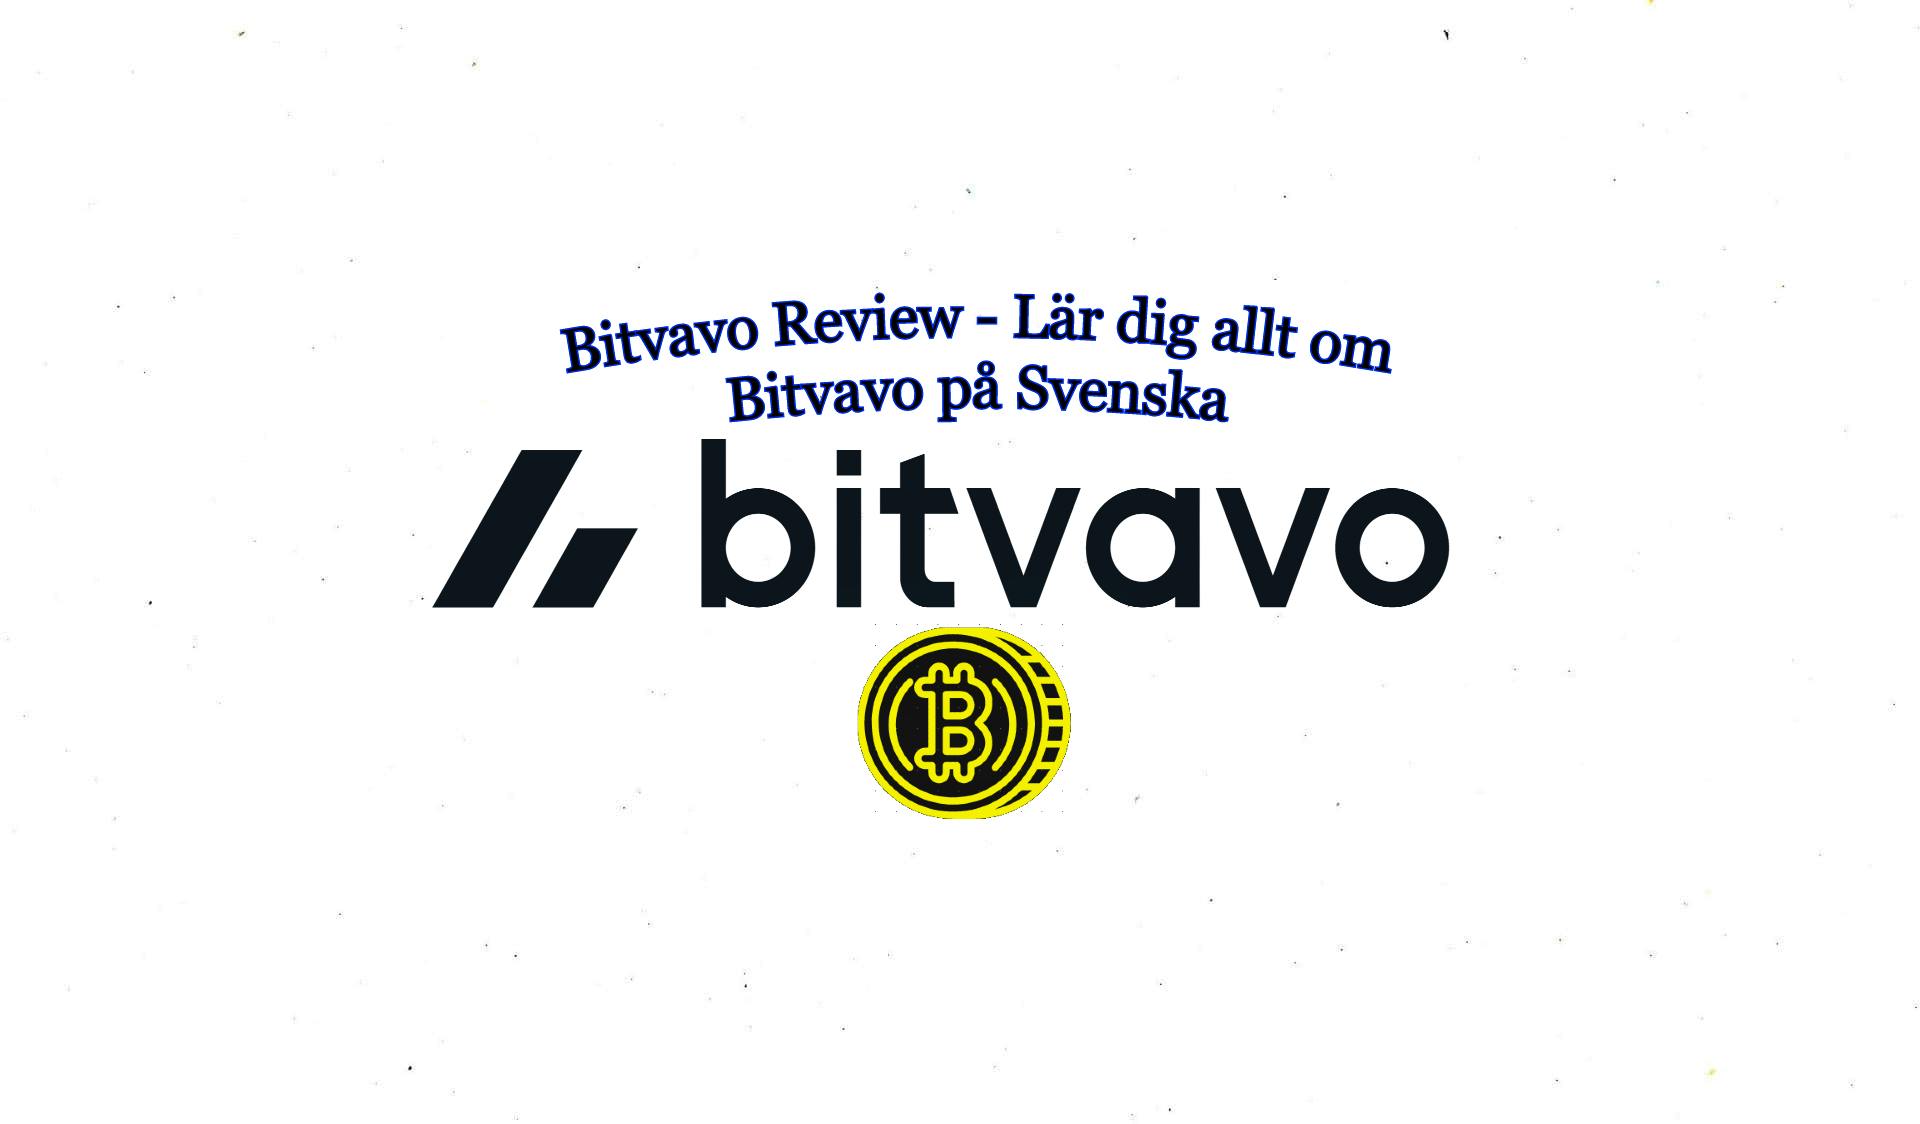 Bitvavo Review - Lär dig allt om Bitvavo på Svenska